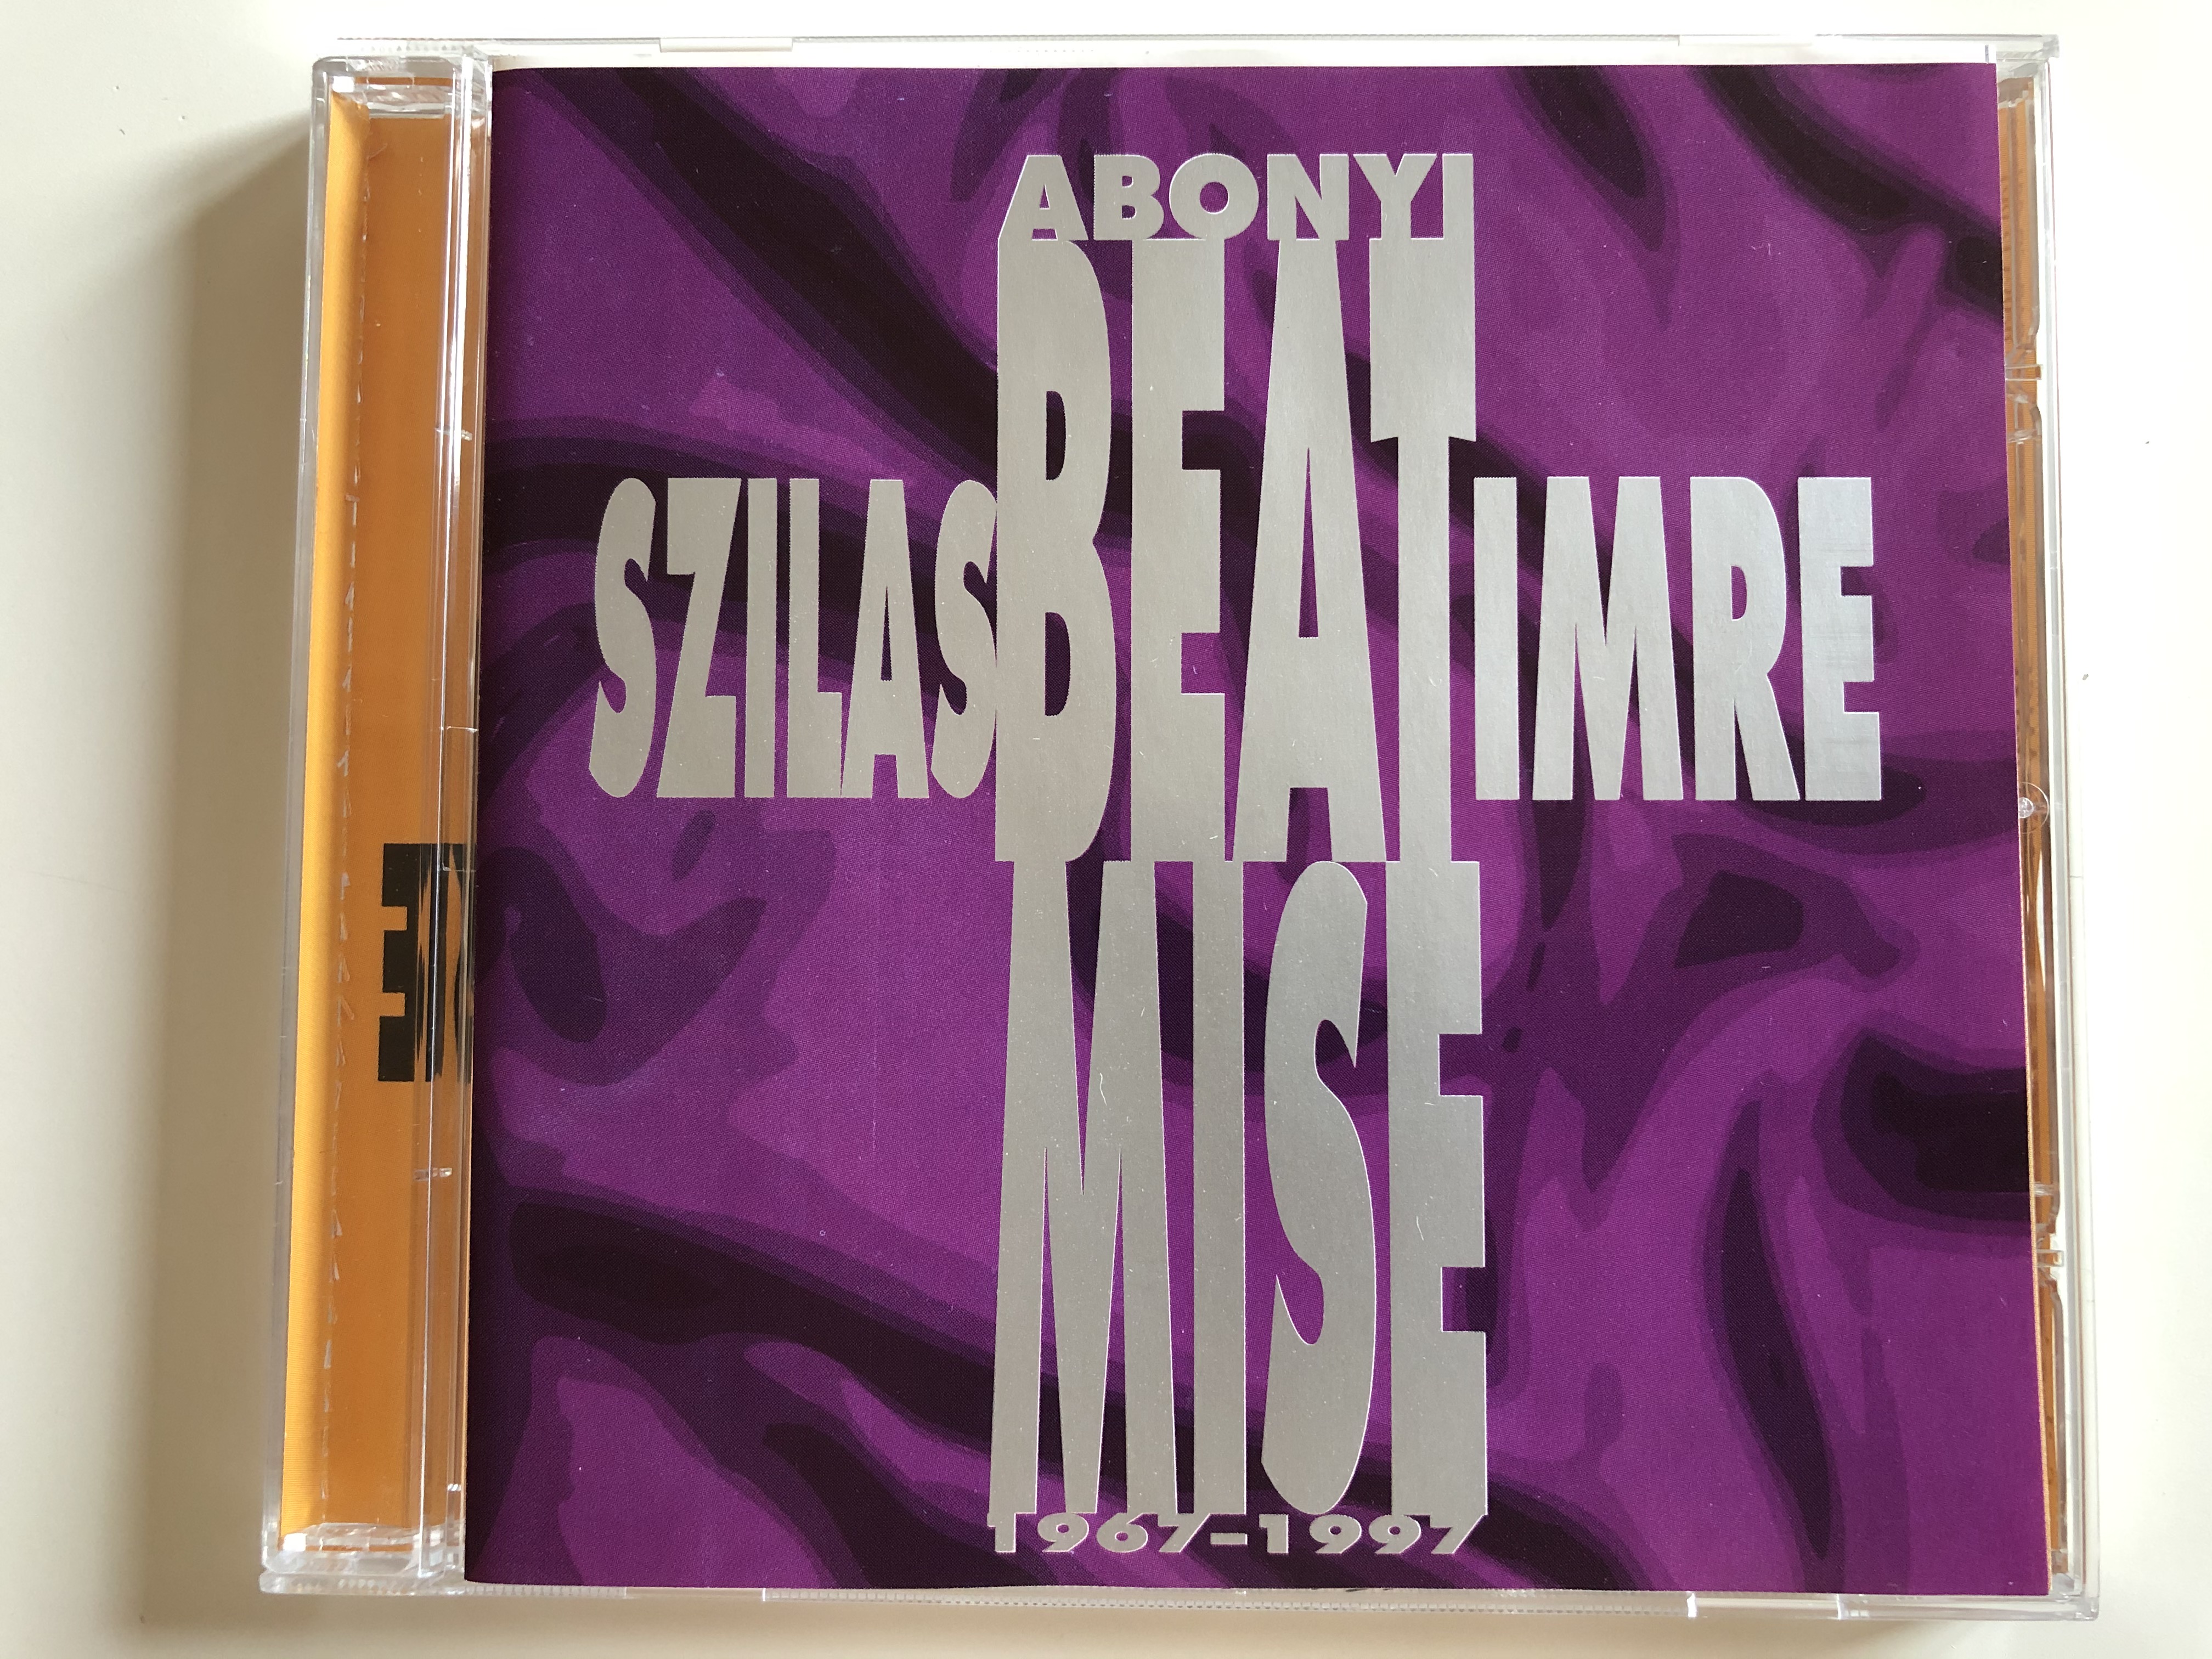 abonyi-beat-mise-szilas-imre-bar-kov-kft.-audio-cd-1997-bar-cd-001-1-.jpg